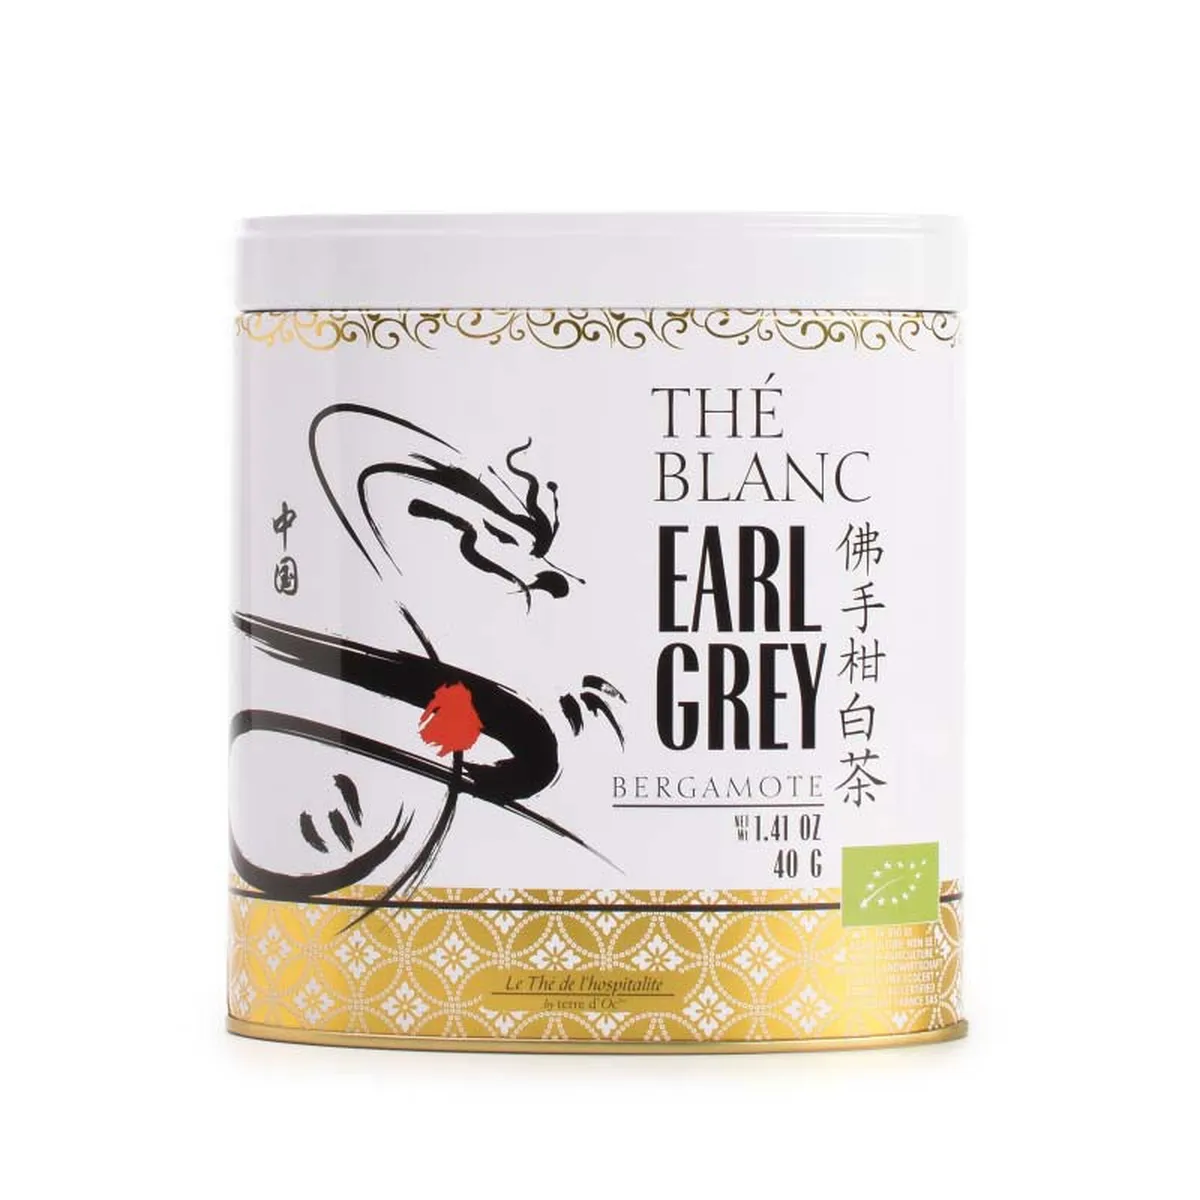 Earl gray organic white tea terre d'oc 40g